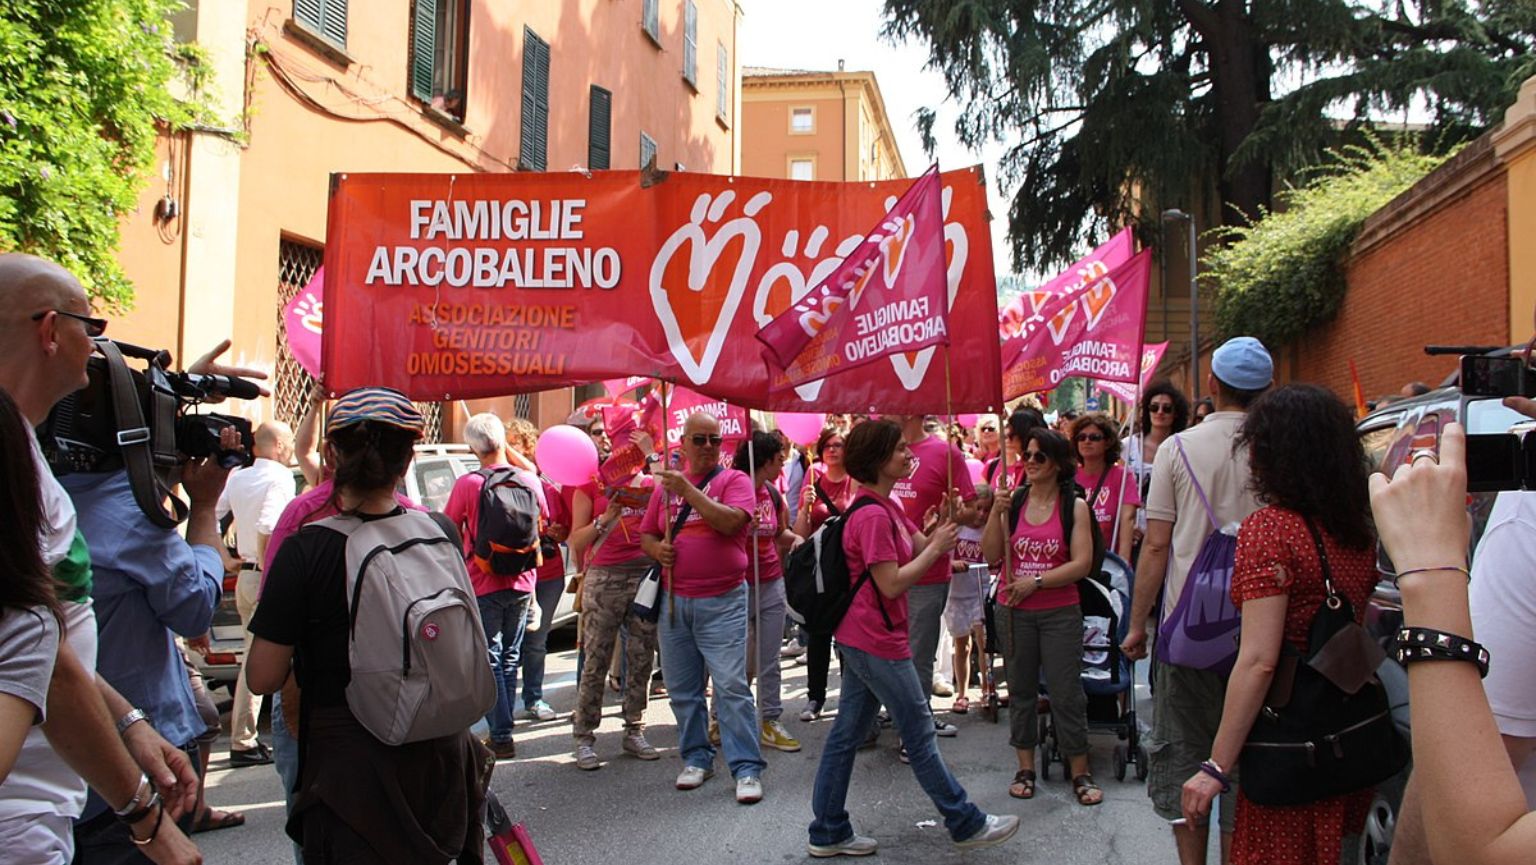 https://commons.wikimedia.org/wiki/File:Famiglie_Arcobaleno_al_Bologna_Pride_2012_-_4_-_Foto_Giovanni_Dall%27Orto,_9_giugno_2012.jpg?uselang=en#Licensing